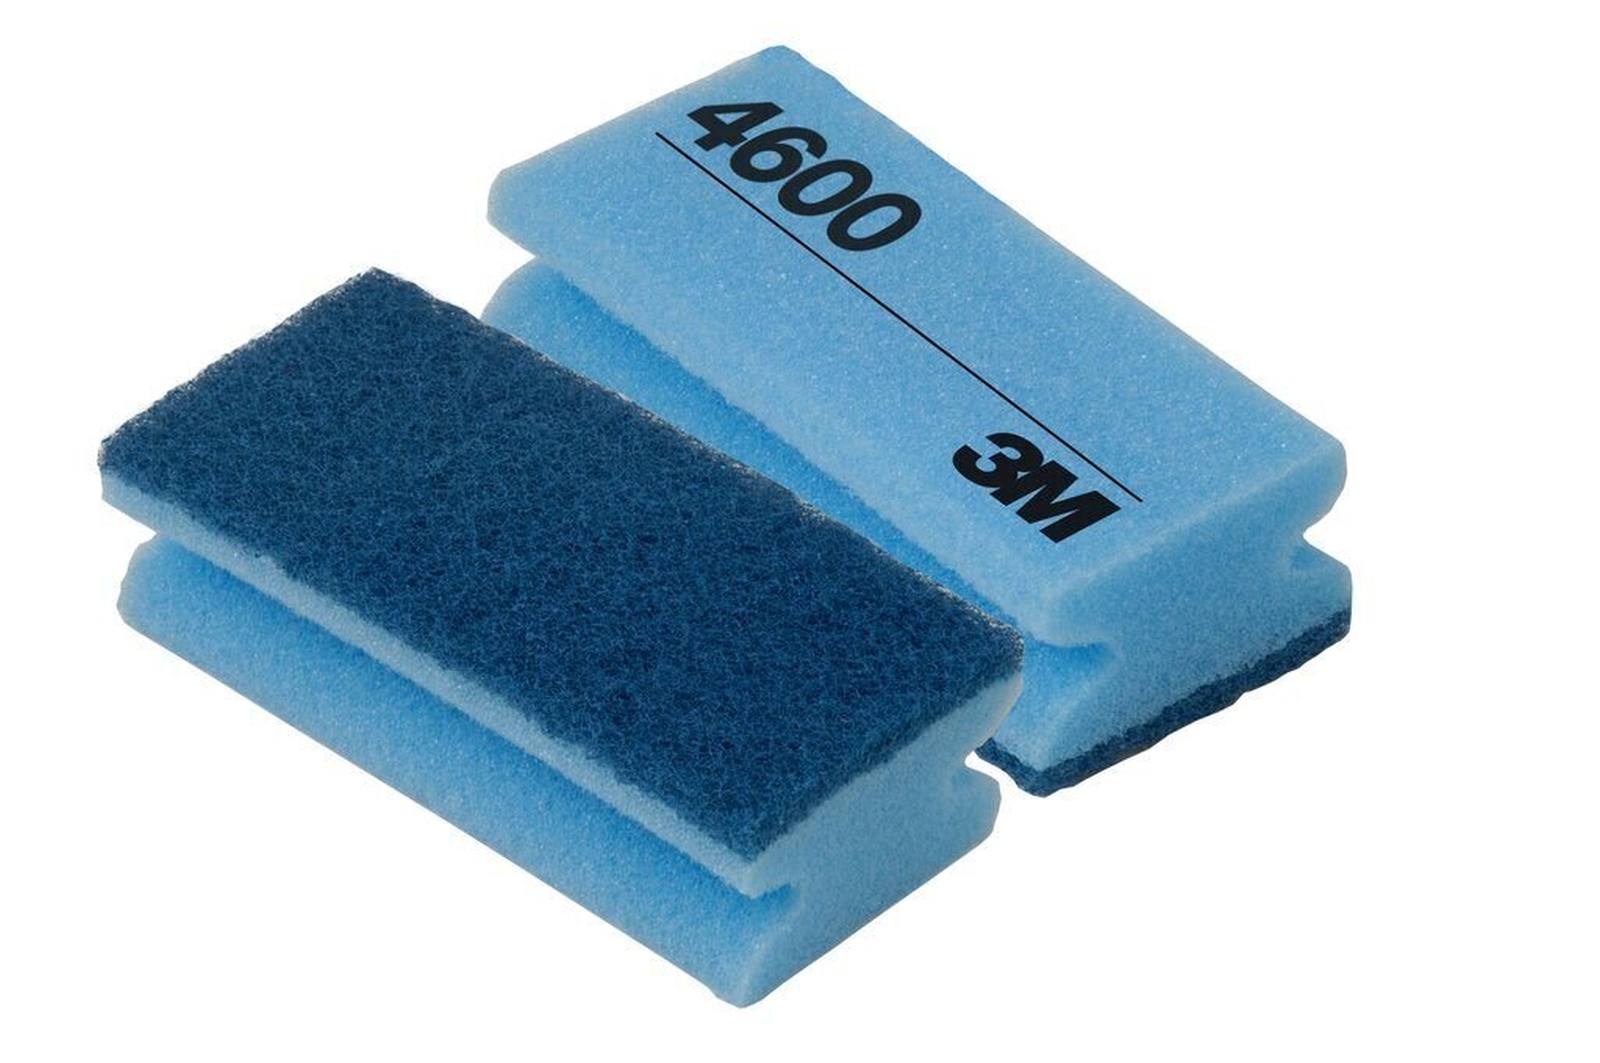 3M Scotch-Brite Cleaning sponge 4600 blue/blue 70 mm x 150 mm